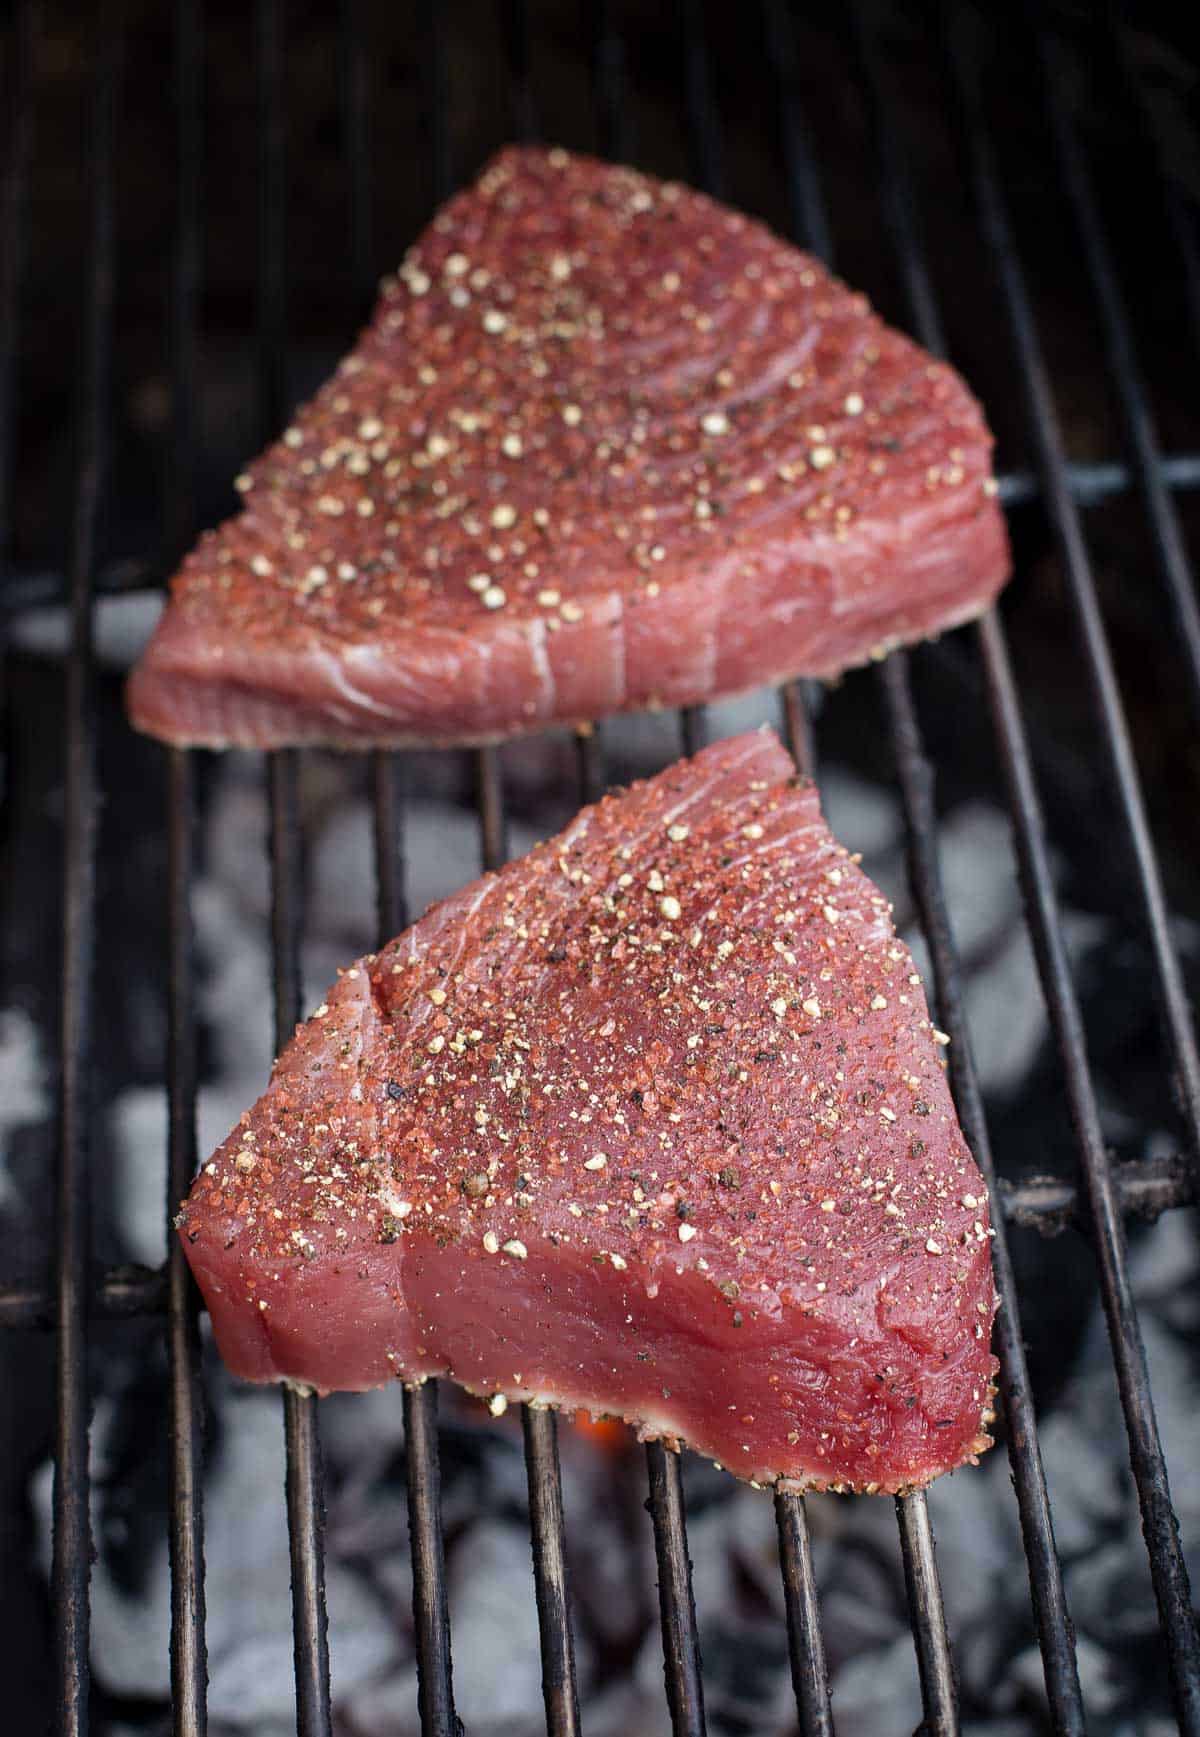 Ahi Tuna Steaks on the grill